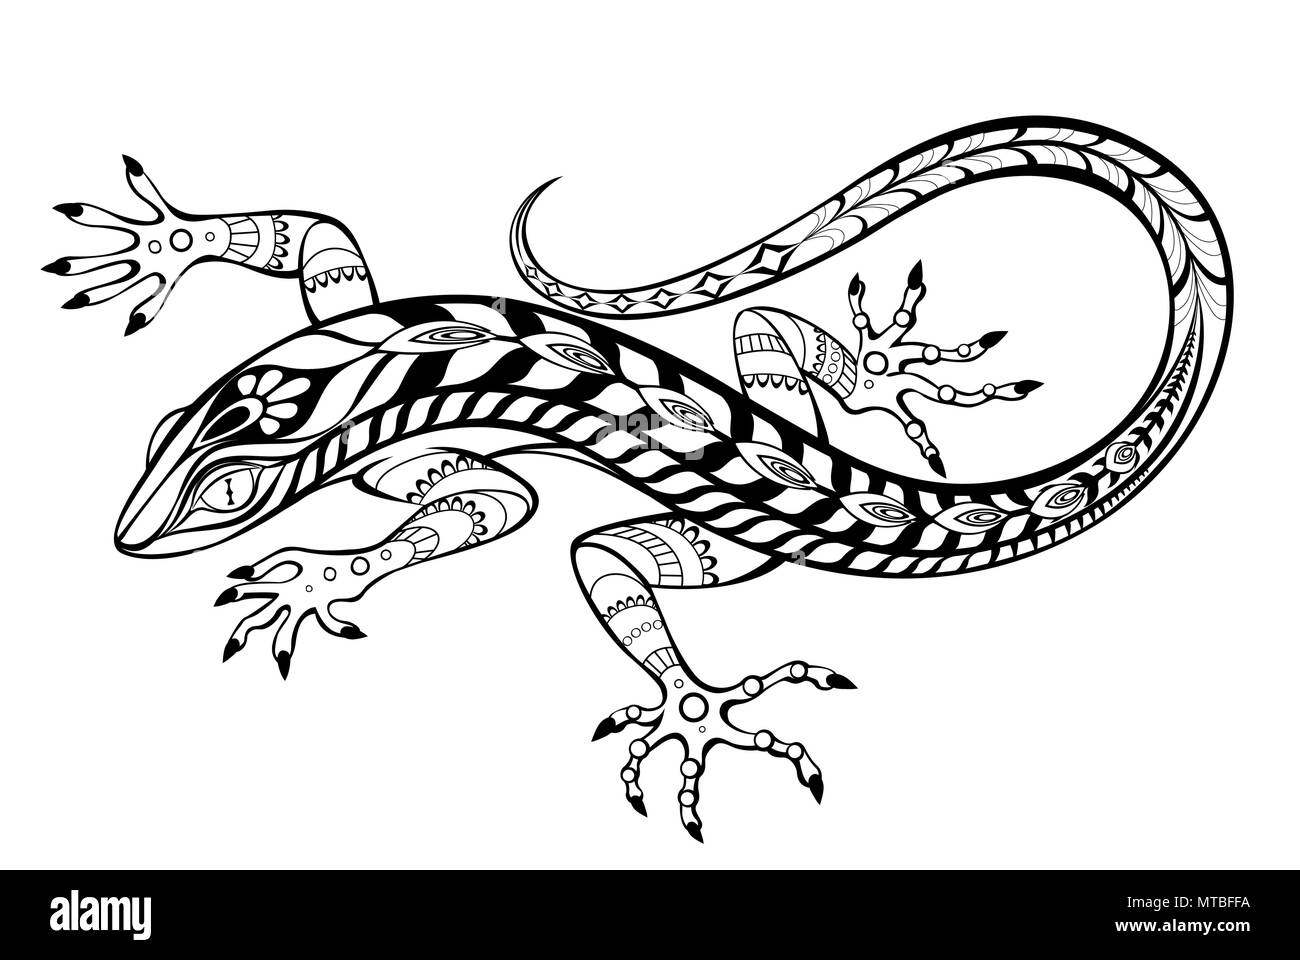 Eine kunstvoll gezeichnet, Kontur, gemusterten Eidechse auf weißem Hintergrund. Tattoos Stil. Stock Vektor